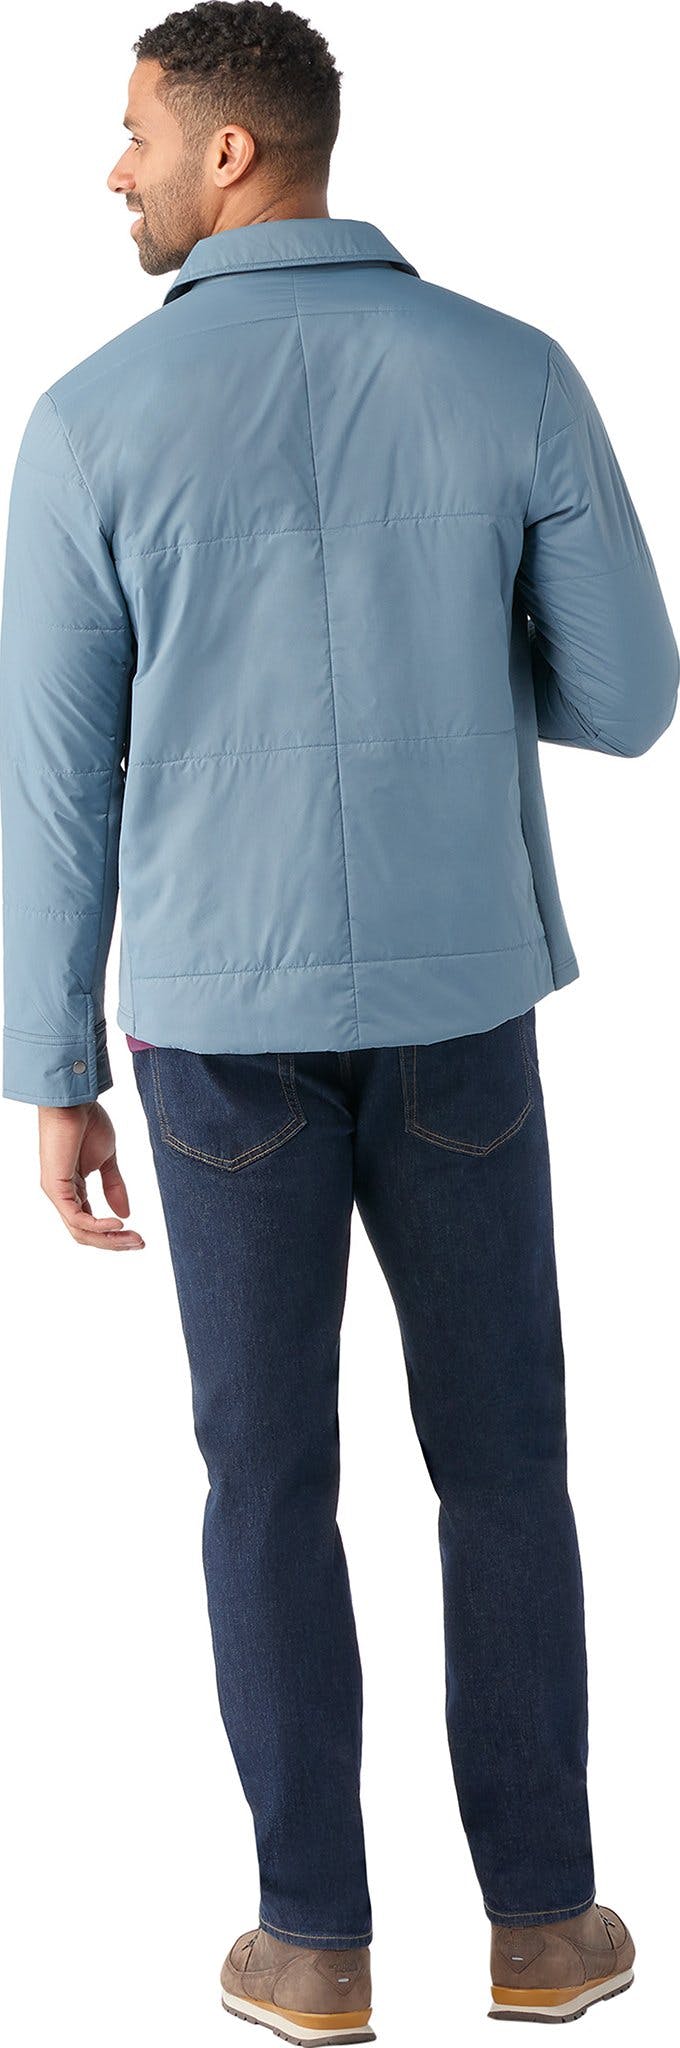 Numéro de l'image de la galerie de produits 2 pour le produit Manteau-chemise Smartloft - Homme